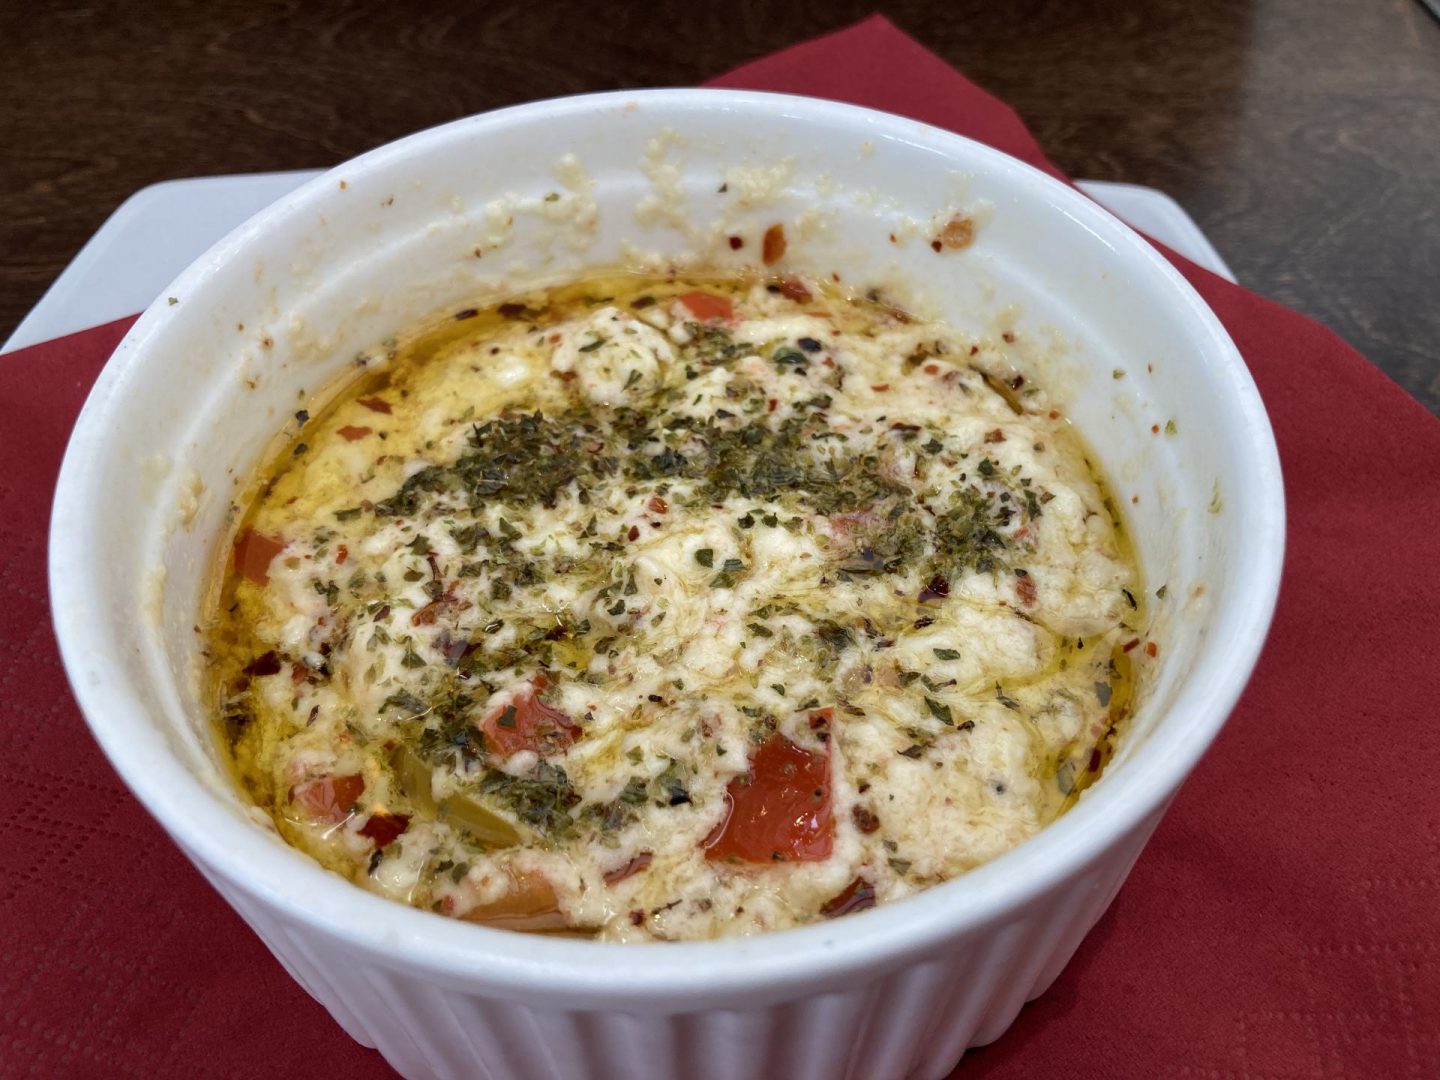 Erfahrung Bewertung Kritik Taverne El Greco Herne Bougourdi Foodblog Sternestulle